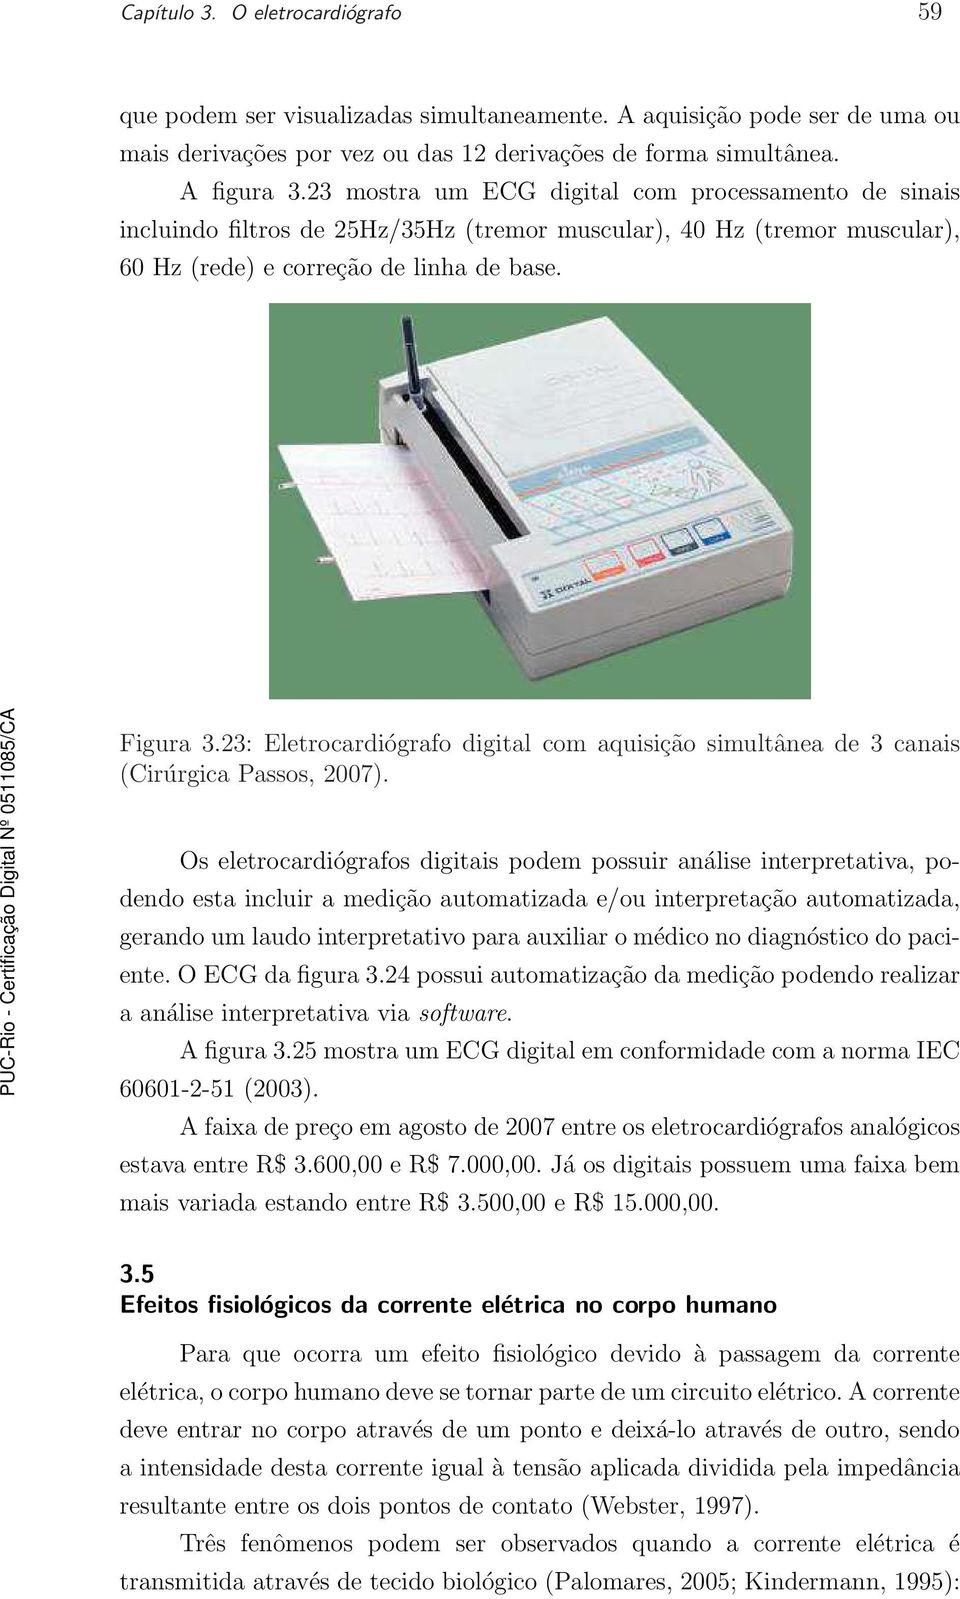 23: Eletrocardiógrafo digital com aquisição simultânea de 3 canais (Cirúrgica Passos, 2007).